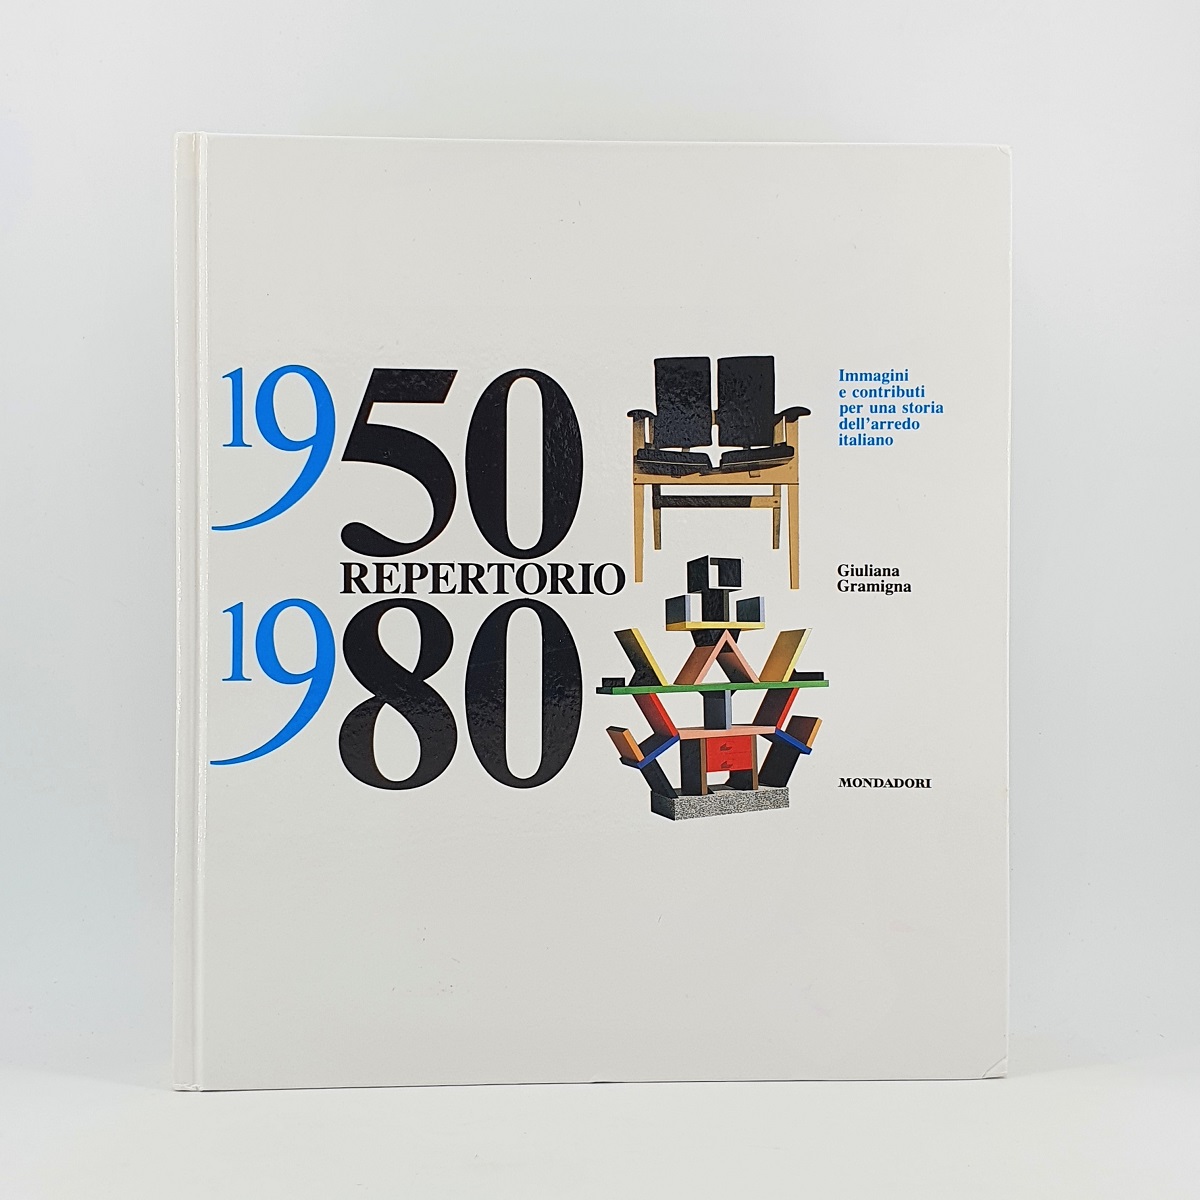 1950/1980 Repertorio. Immagini e contributi per una storia dell'arredo italiano